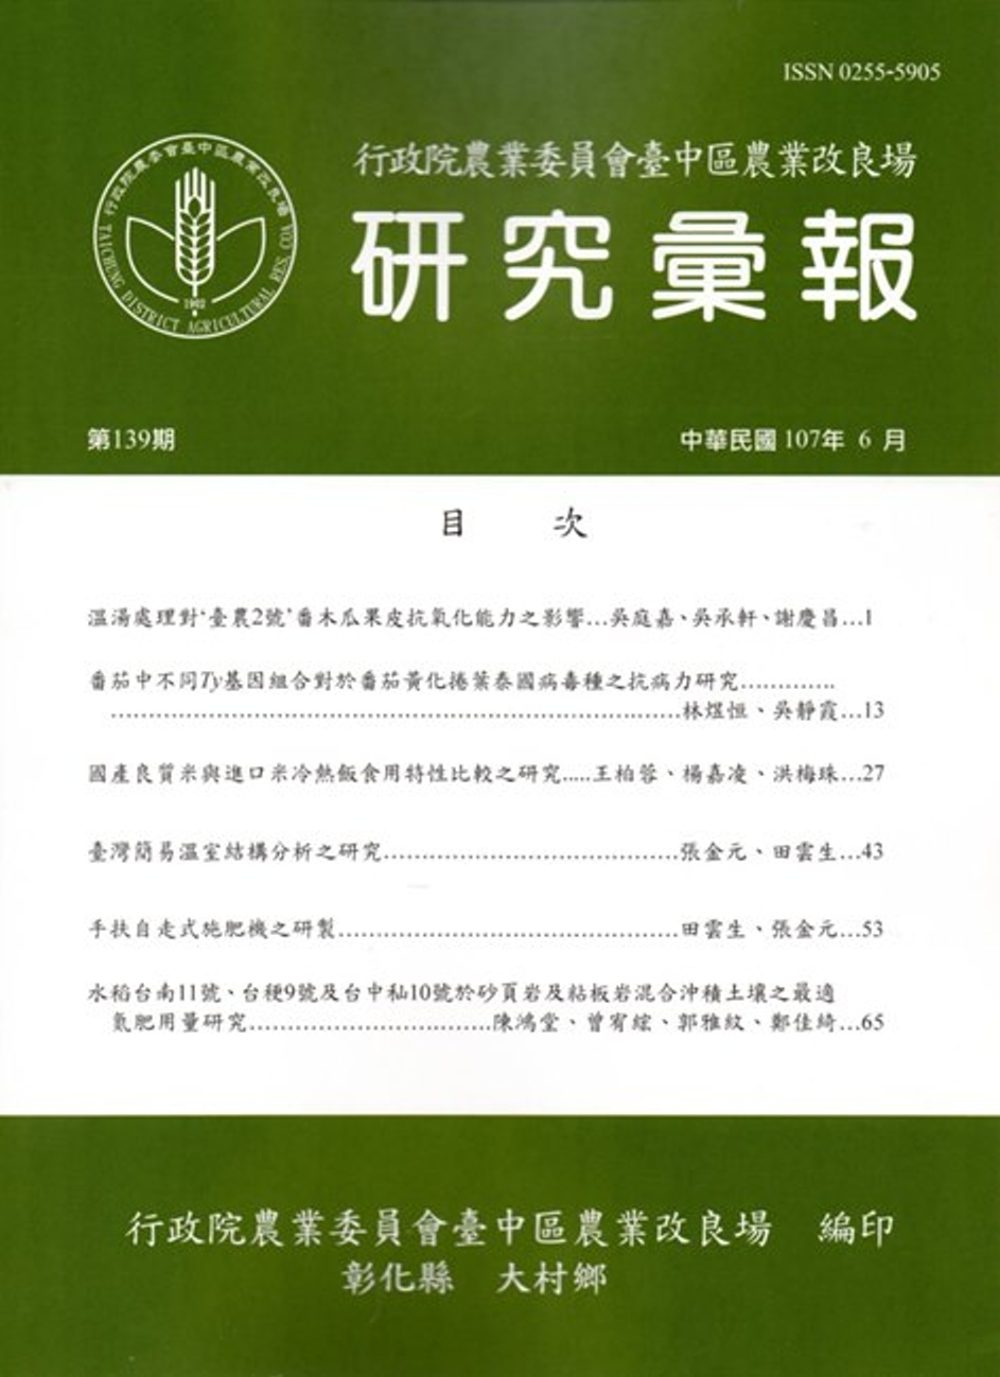 研究彙報139期(107/06)-行政院農業委員會臺中區農業改良場